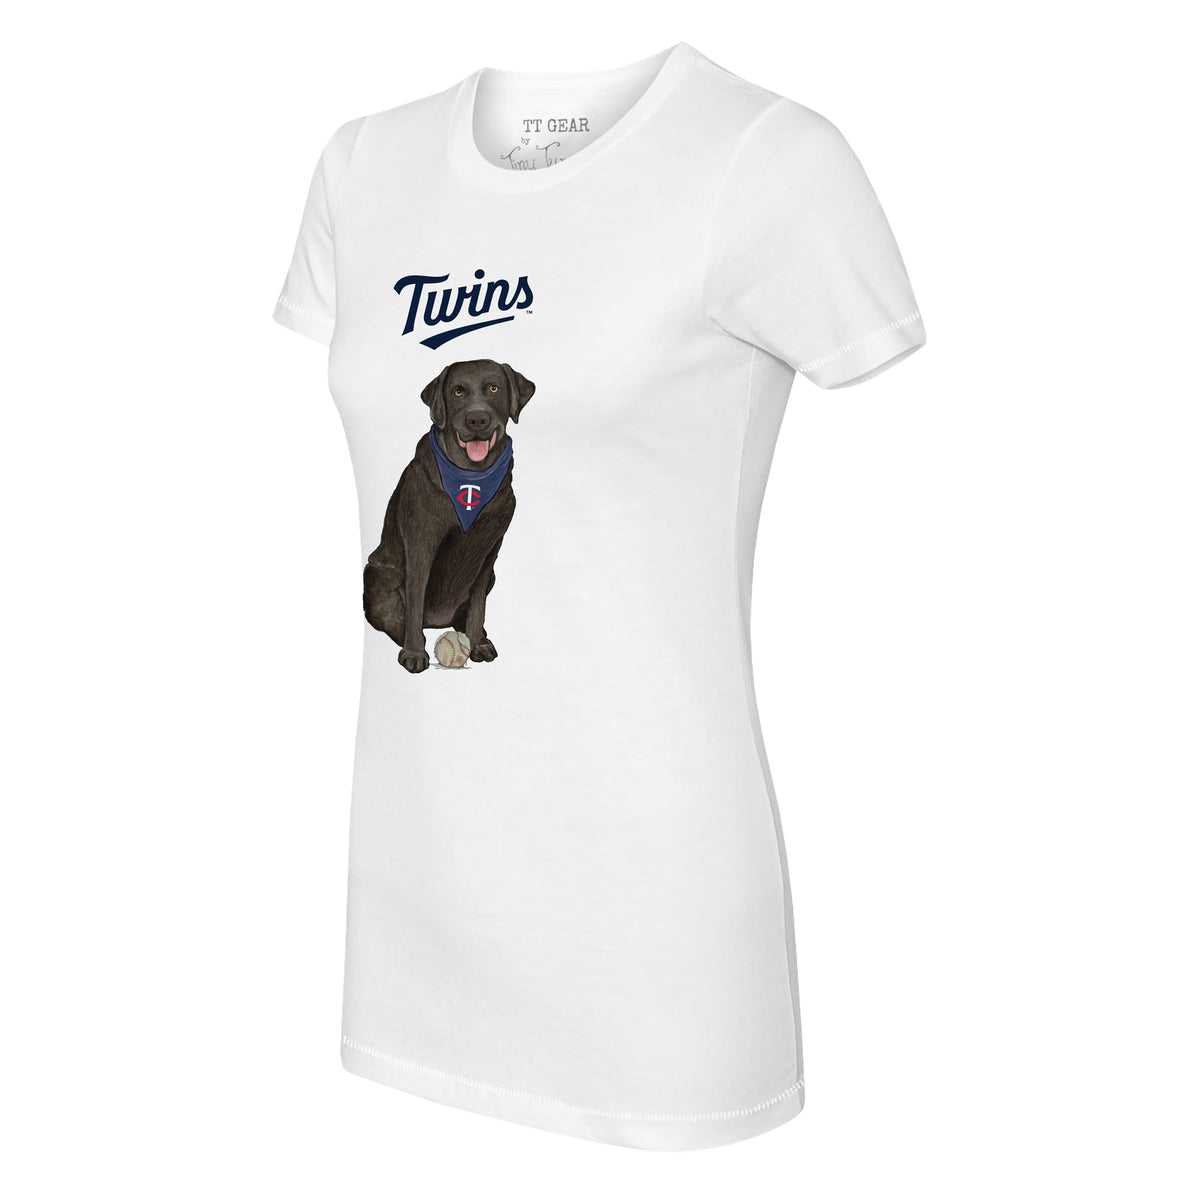 Minnesota Twins Black Labrador Retriever Tee Shirt